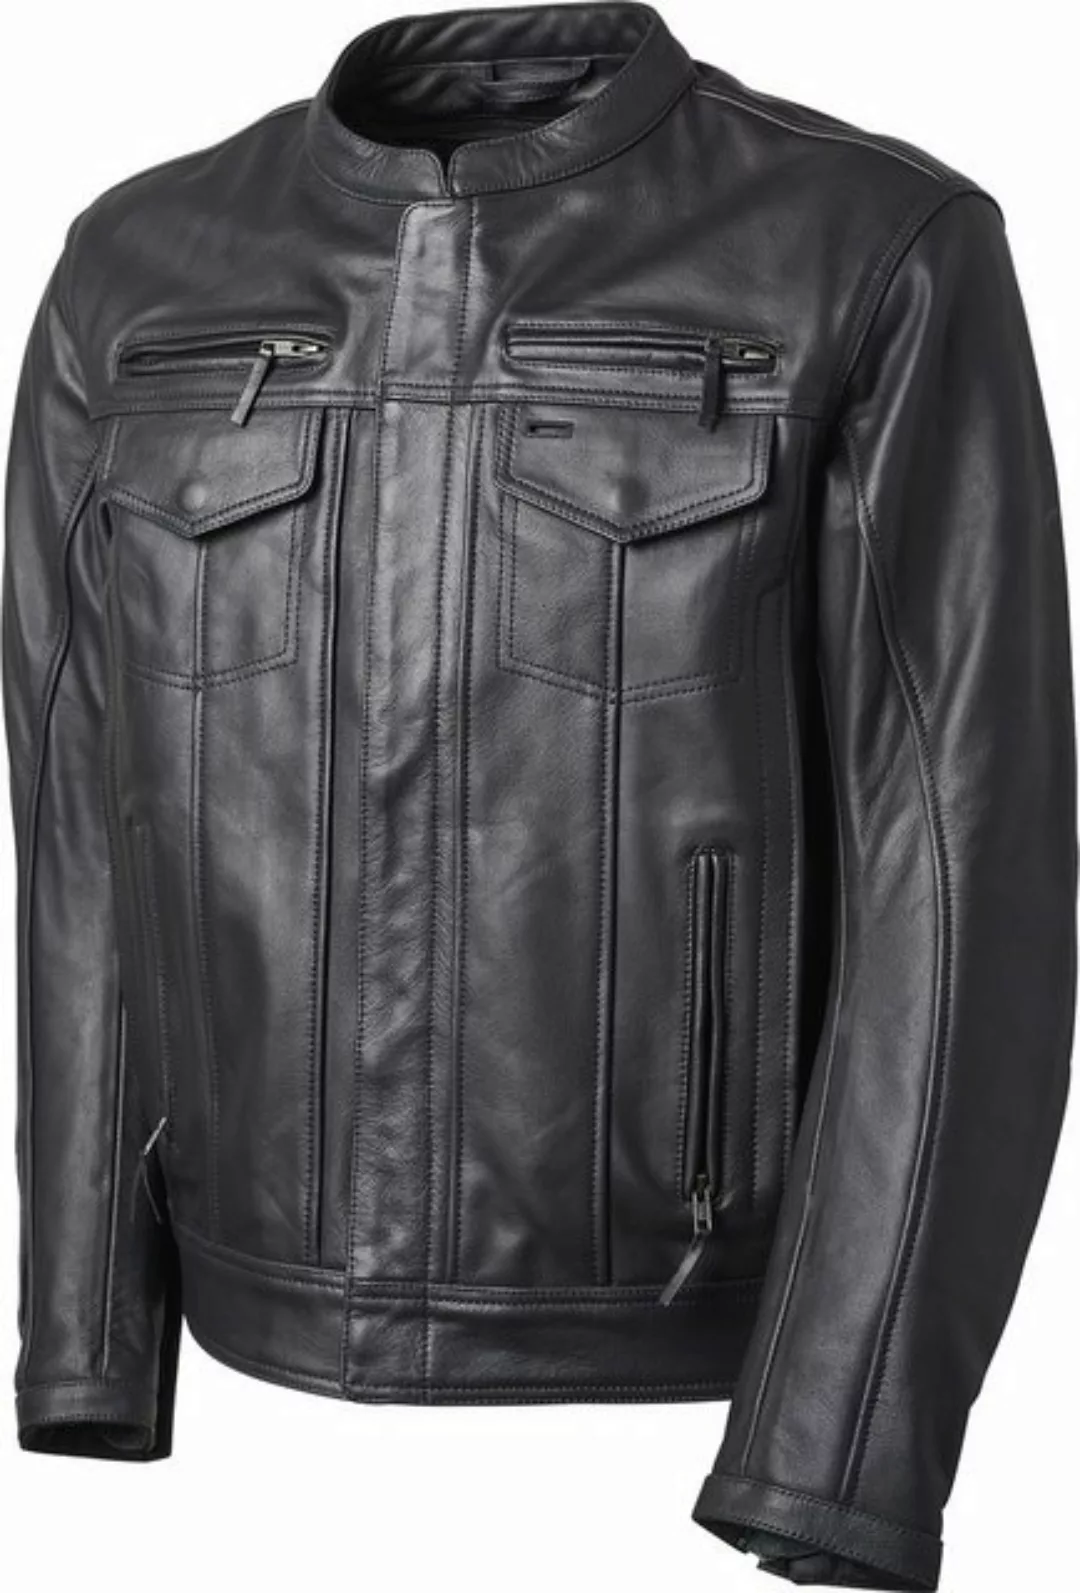 Roland Sands Design Motorradjacke Paramount Jacket 74 günstig online kaufen